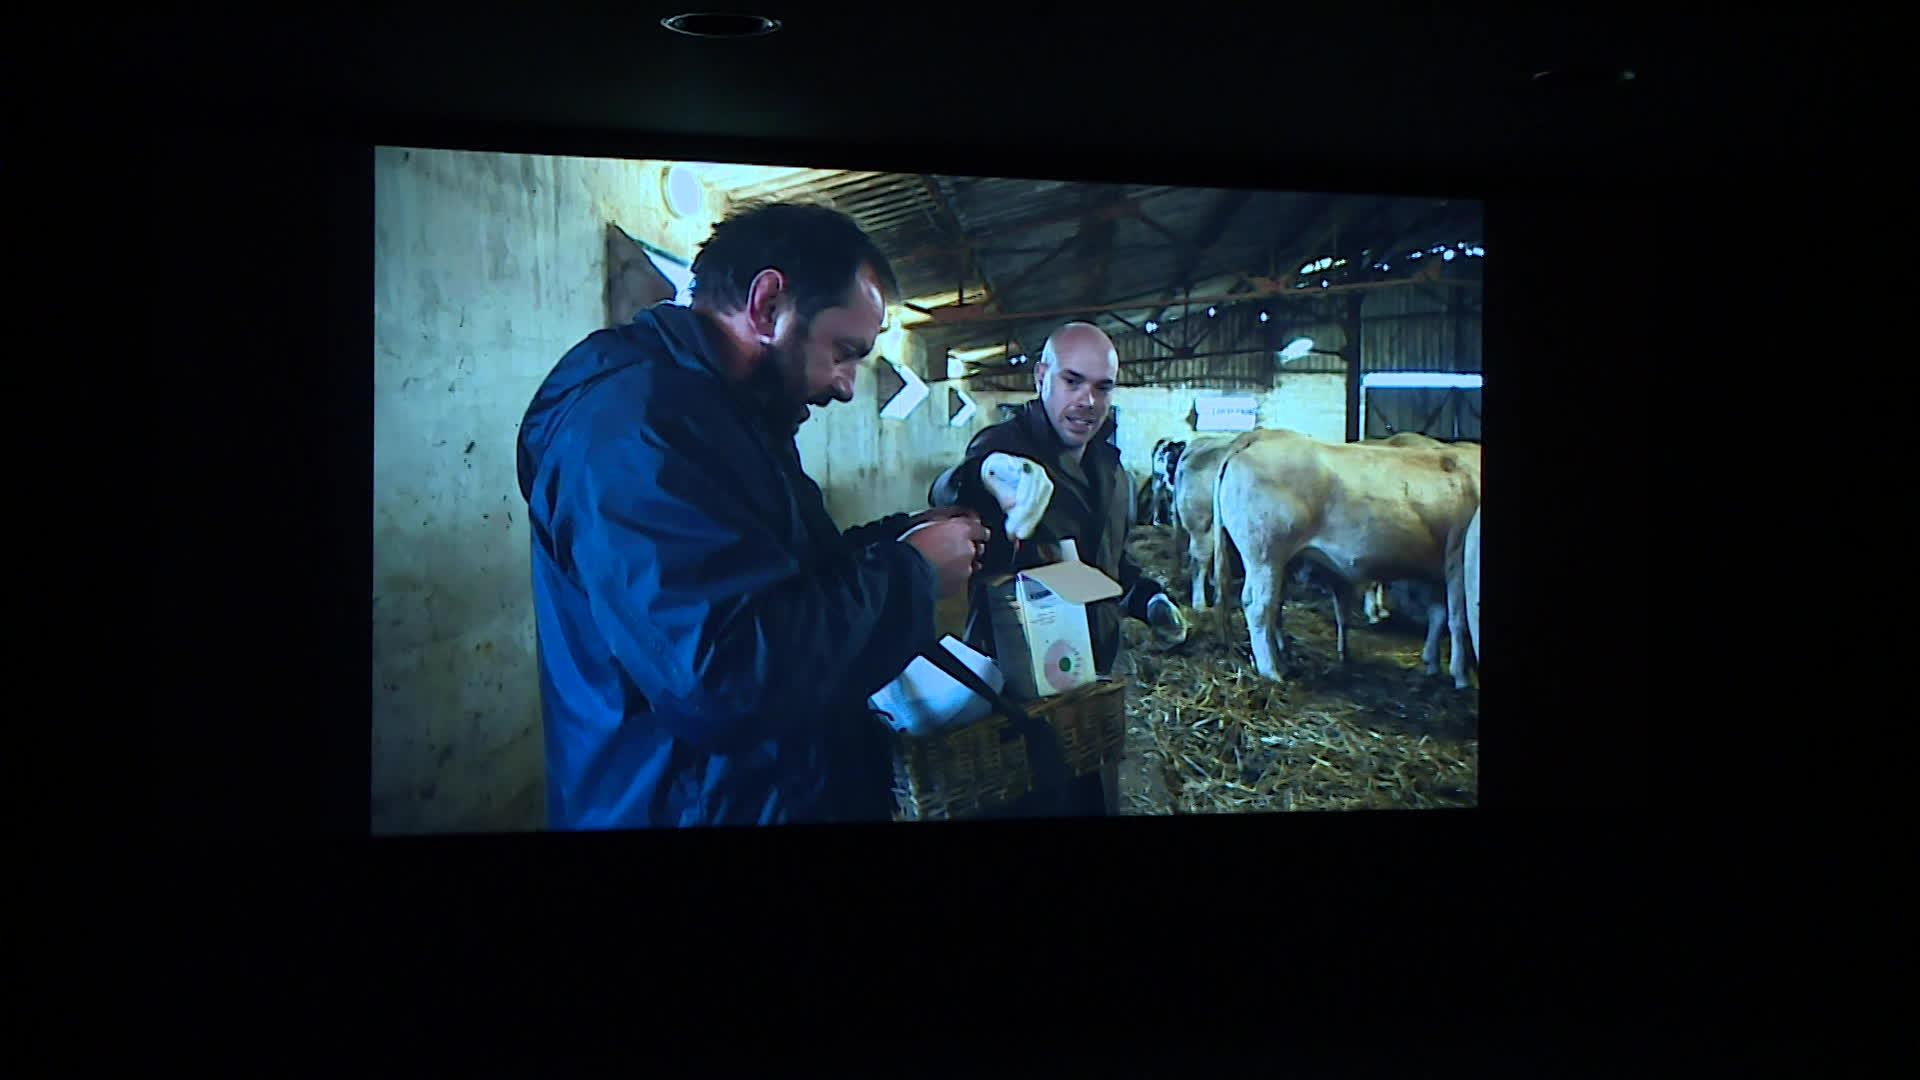 "L'amour vache", le nouveau documentaire d'Edouard Bergeon